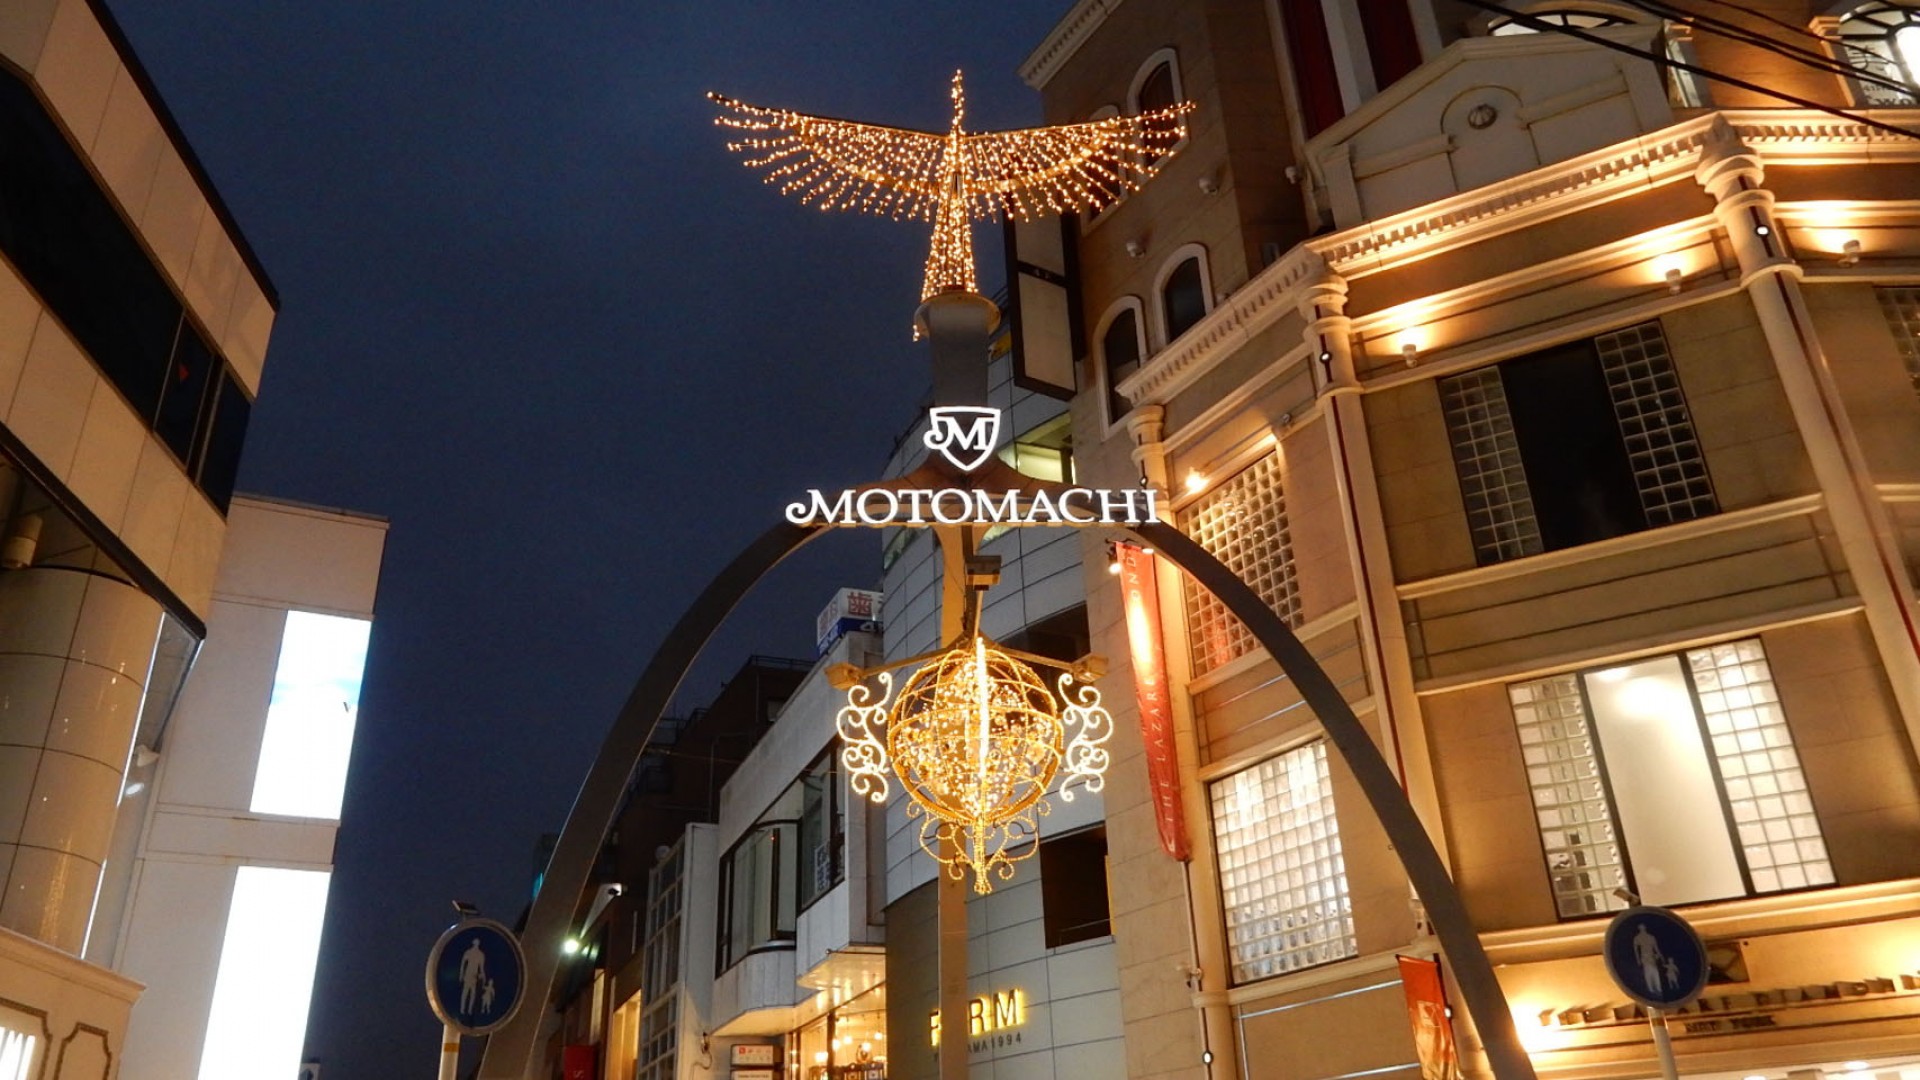 Motomachi Illumination